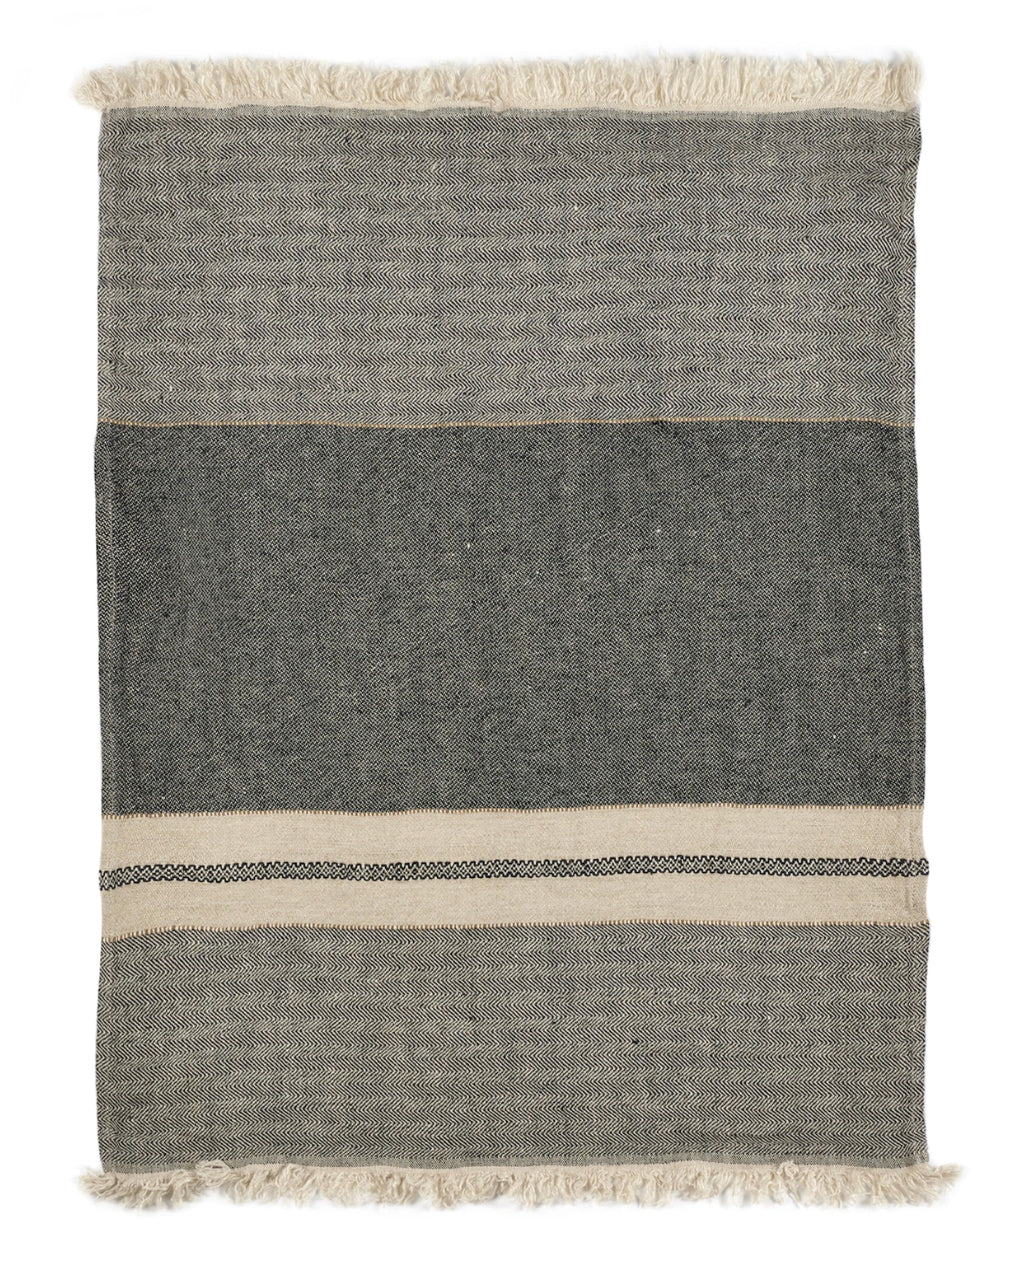 Libeco Guest Towel - Tack Stripe